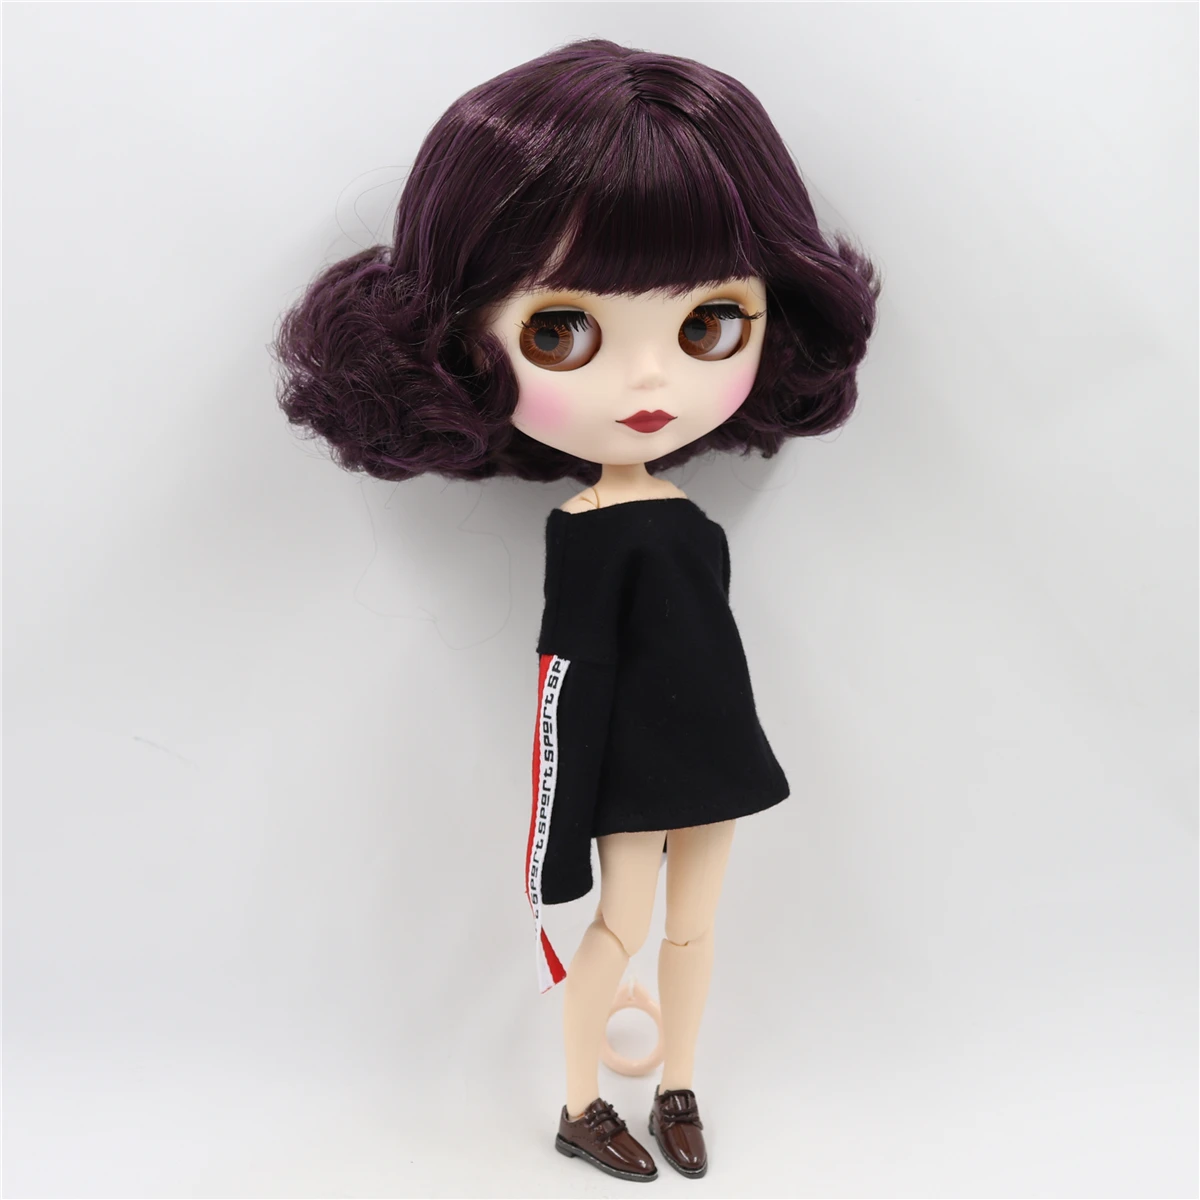 ICY factory шарнирная кукла blyth черный микс фиолетовый волос соединение тела матовое лицо 30 см 1/6 игрушка